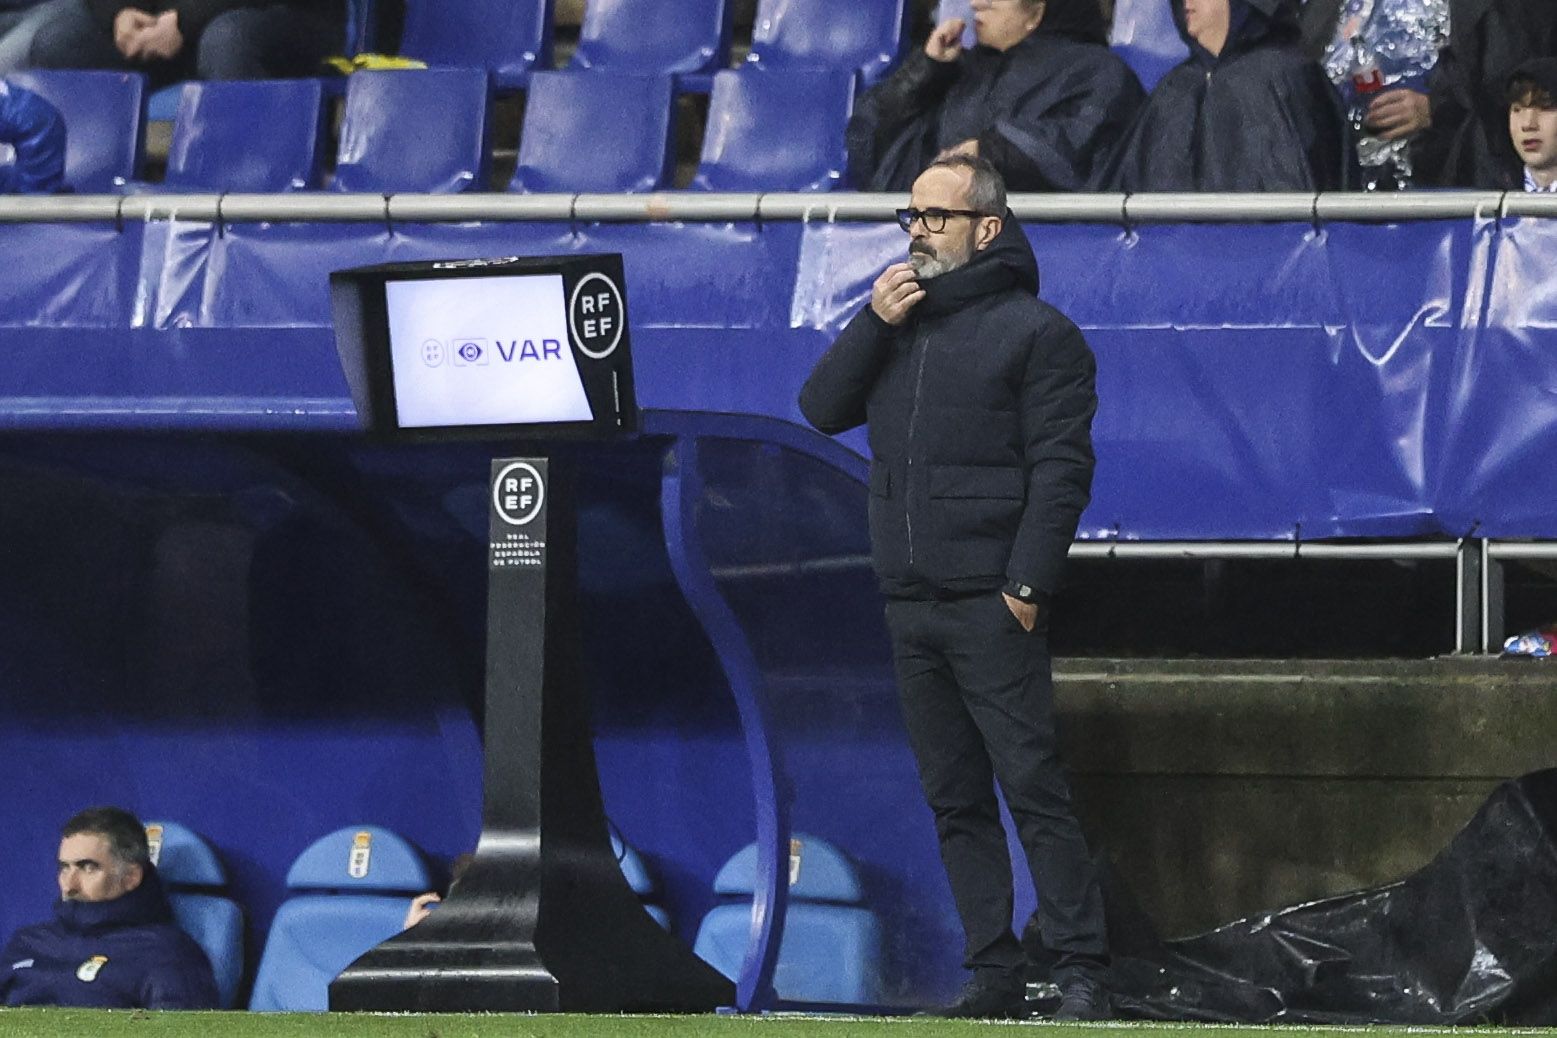 En imágenes: Así fue el Real Oviedo-Villarreal B disputado en el Tartiere